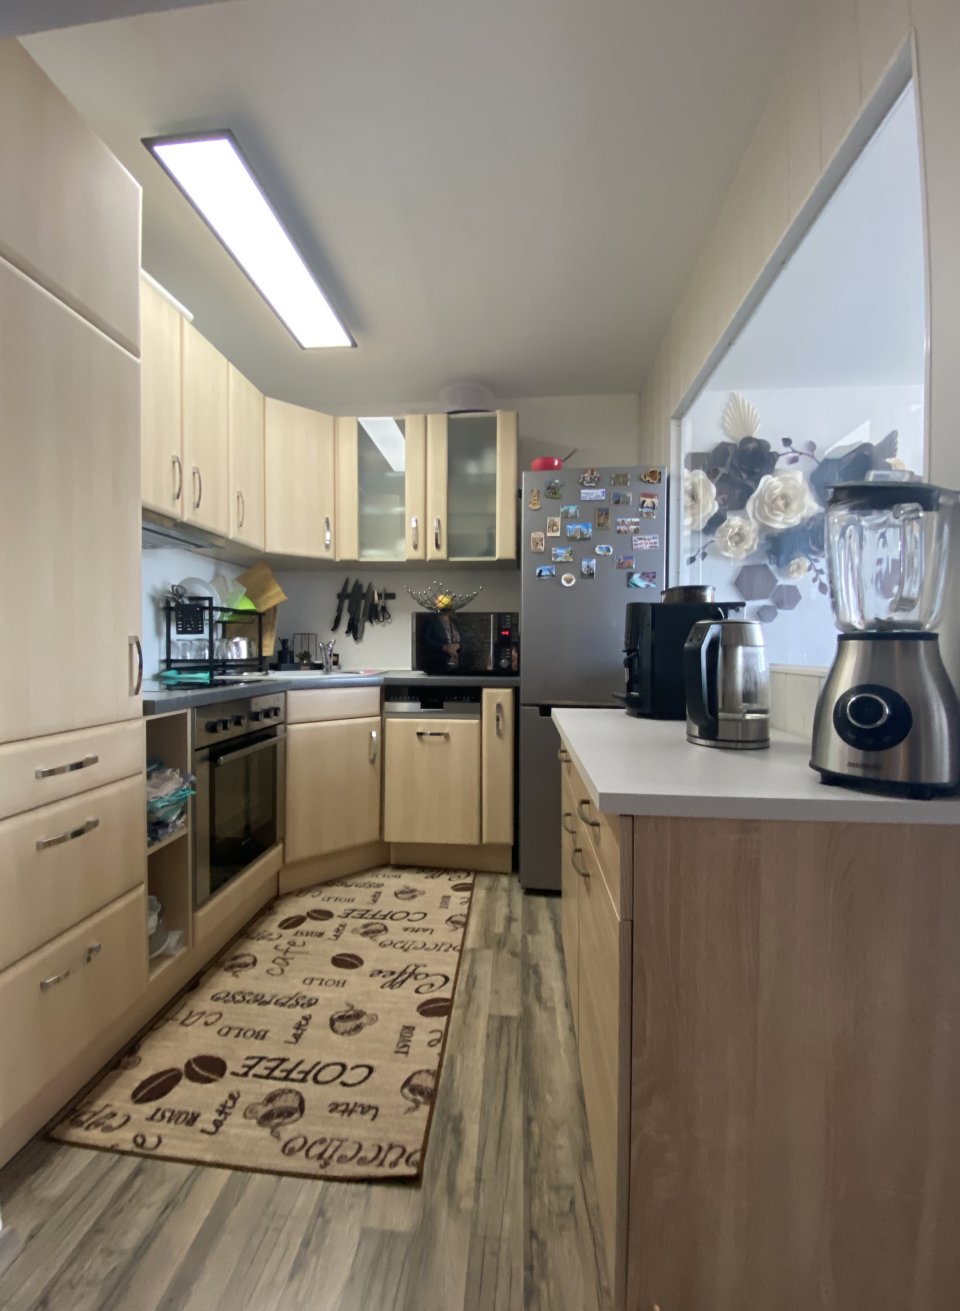 Einbauküche mit Ceran-Kochfeld, Backofen und Spülmaschine (2021 NEU)